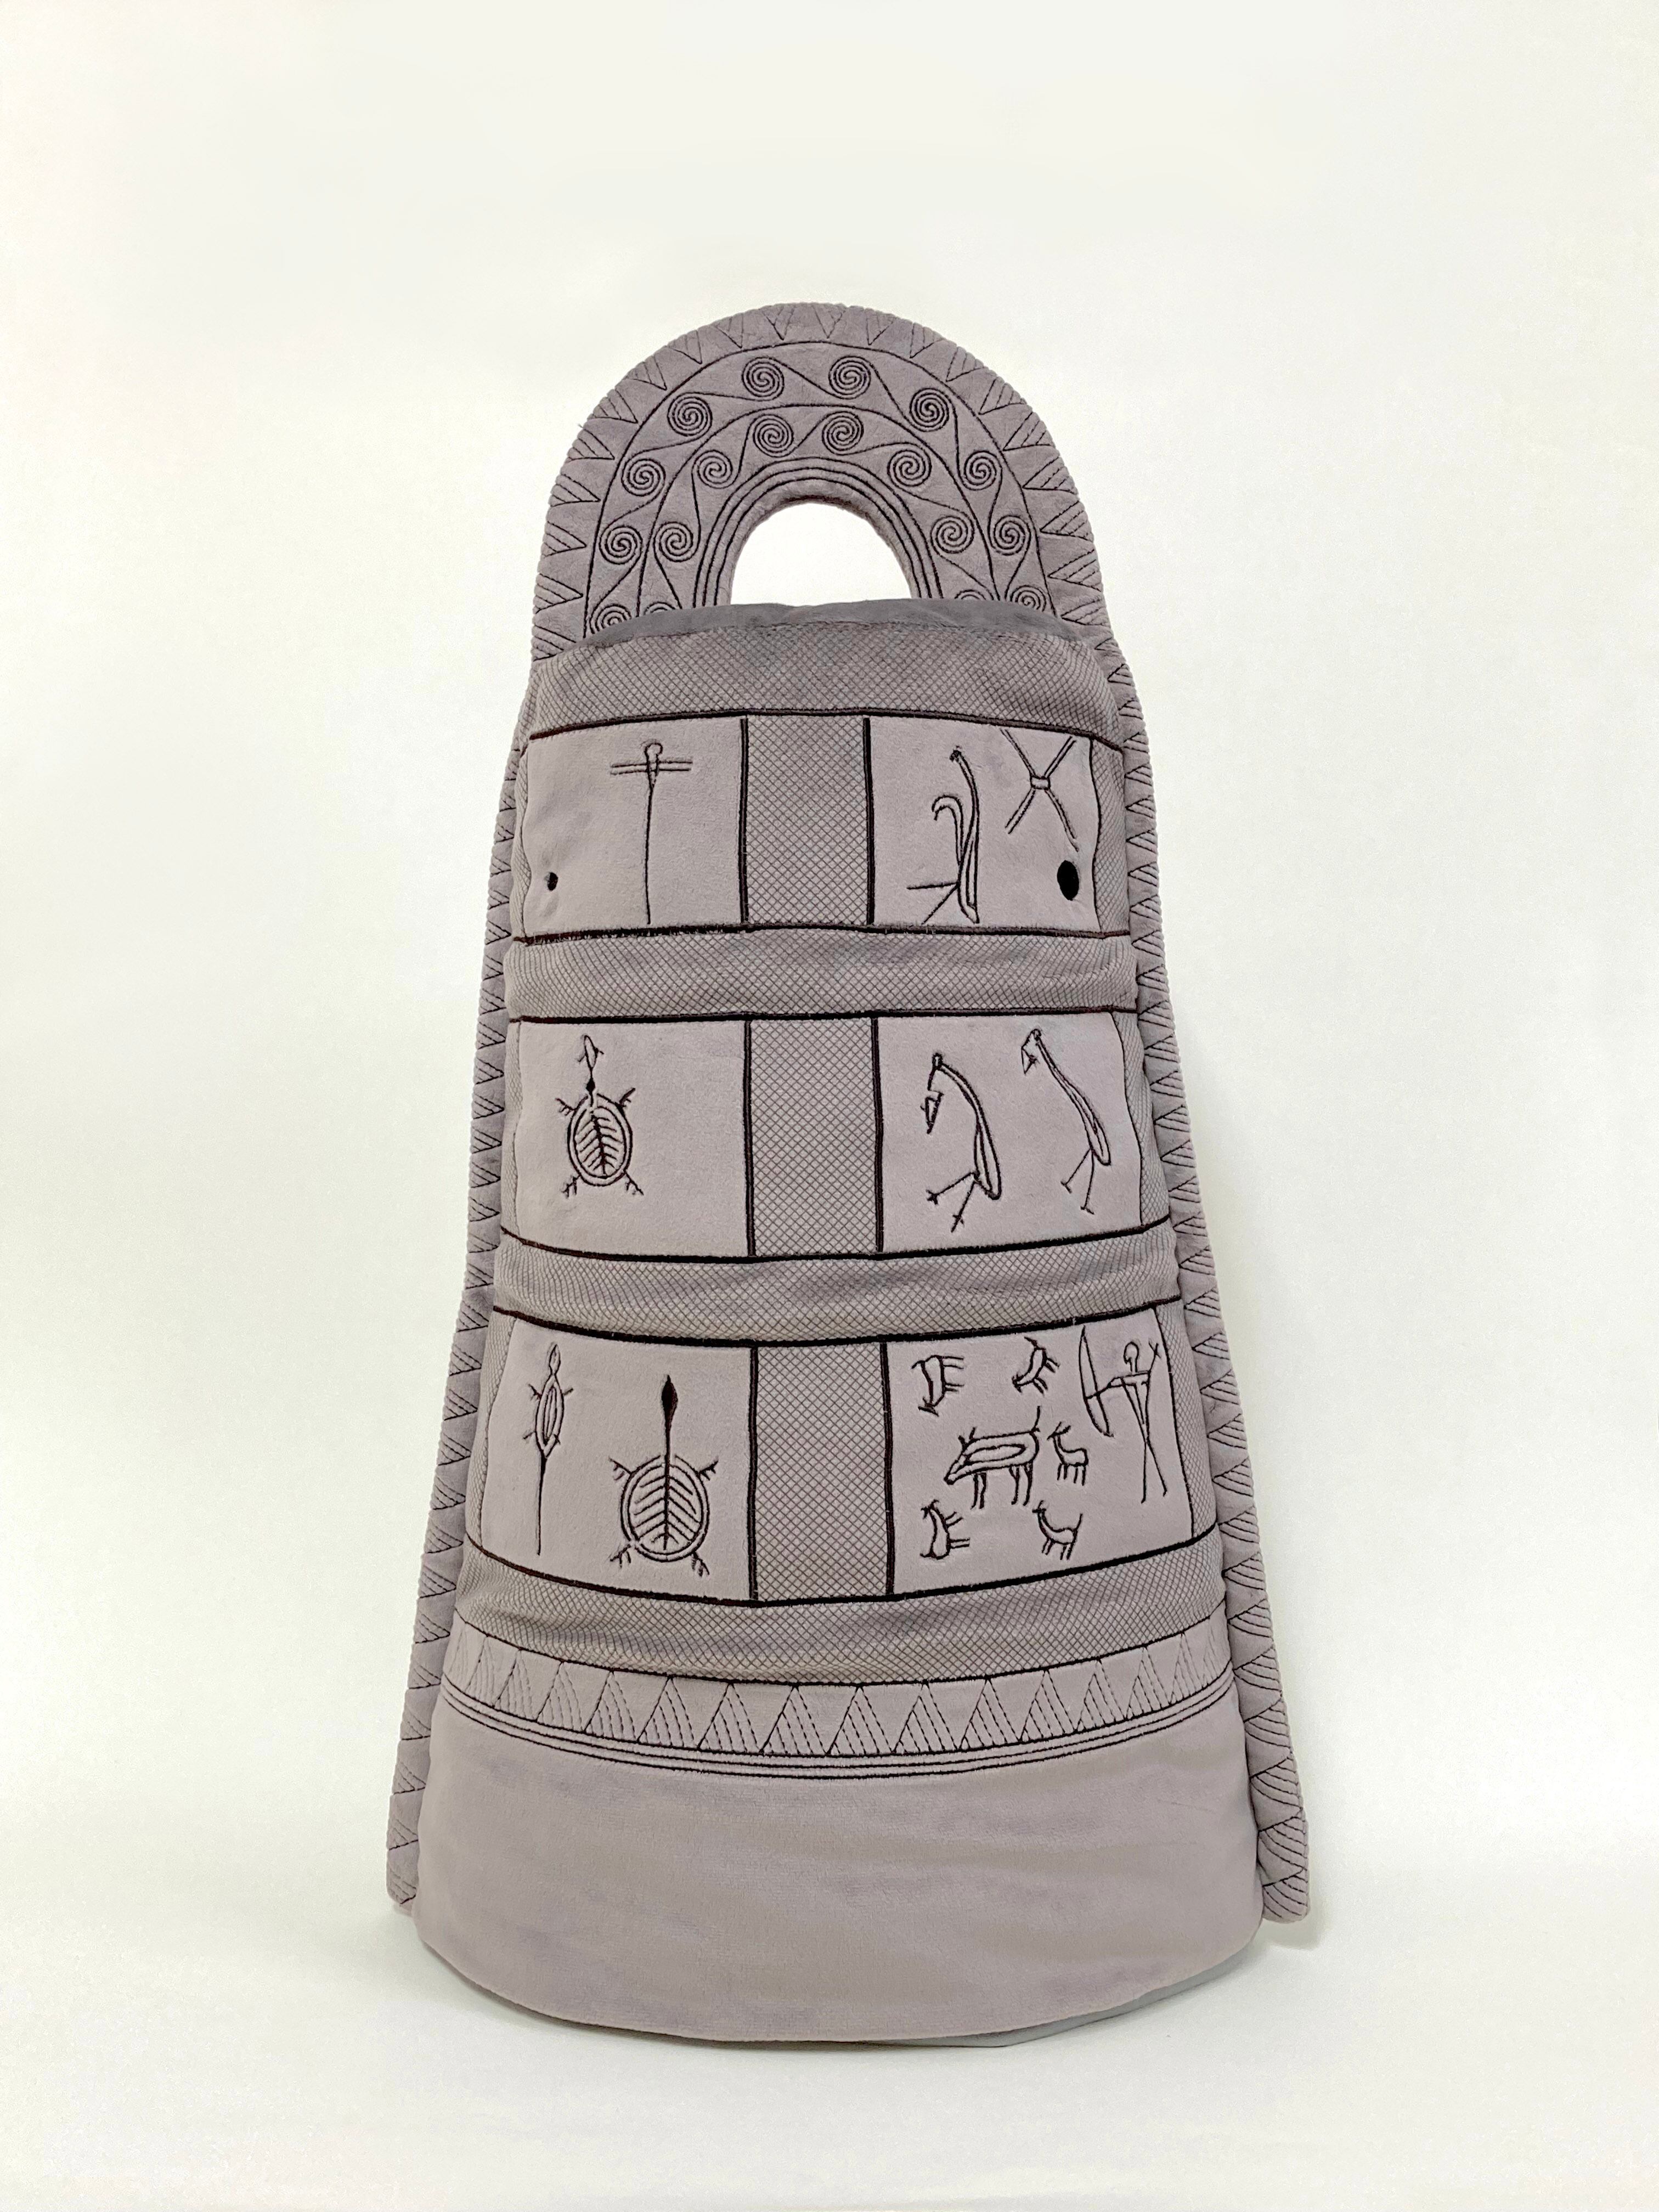 銅鐸抱き枕 国宝展 東京国立博物館のすべて 出産祝い www.sweatbrasil